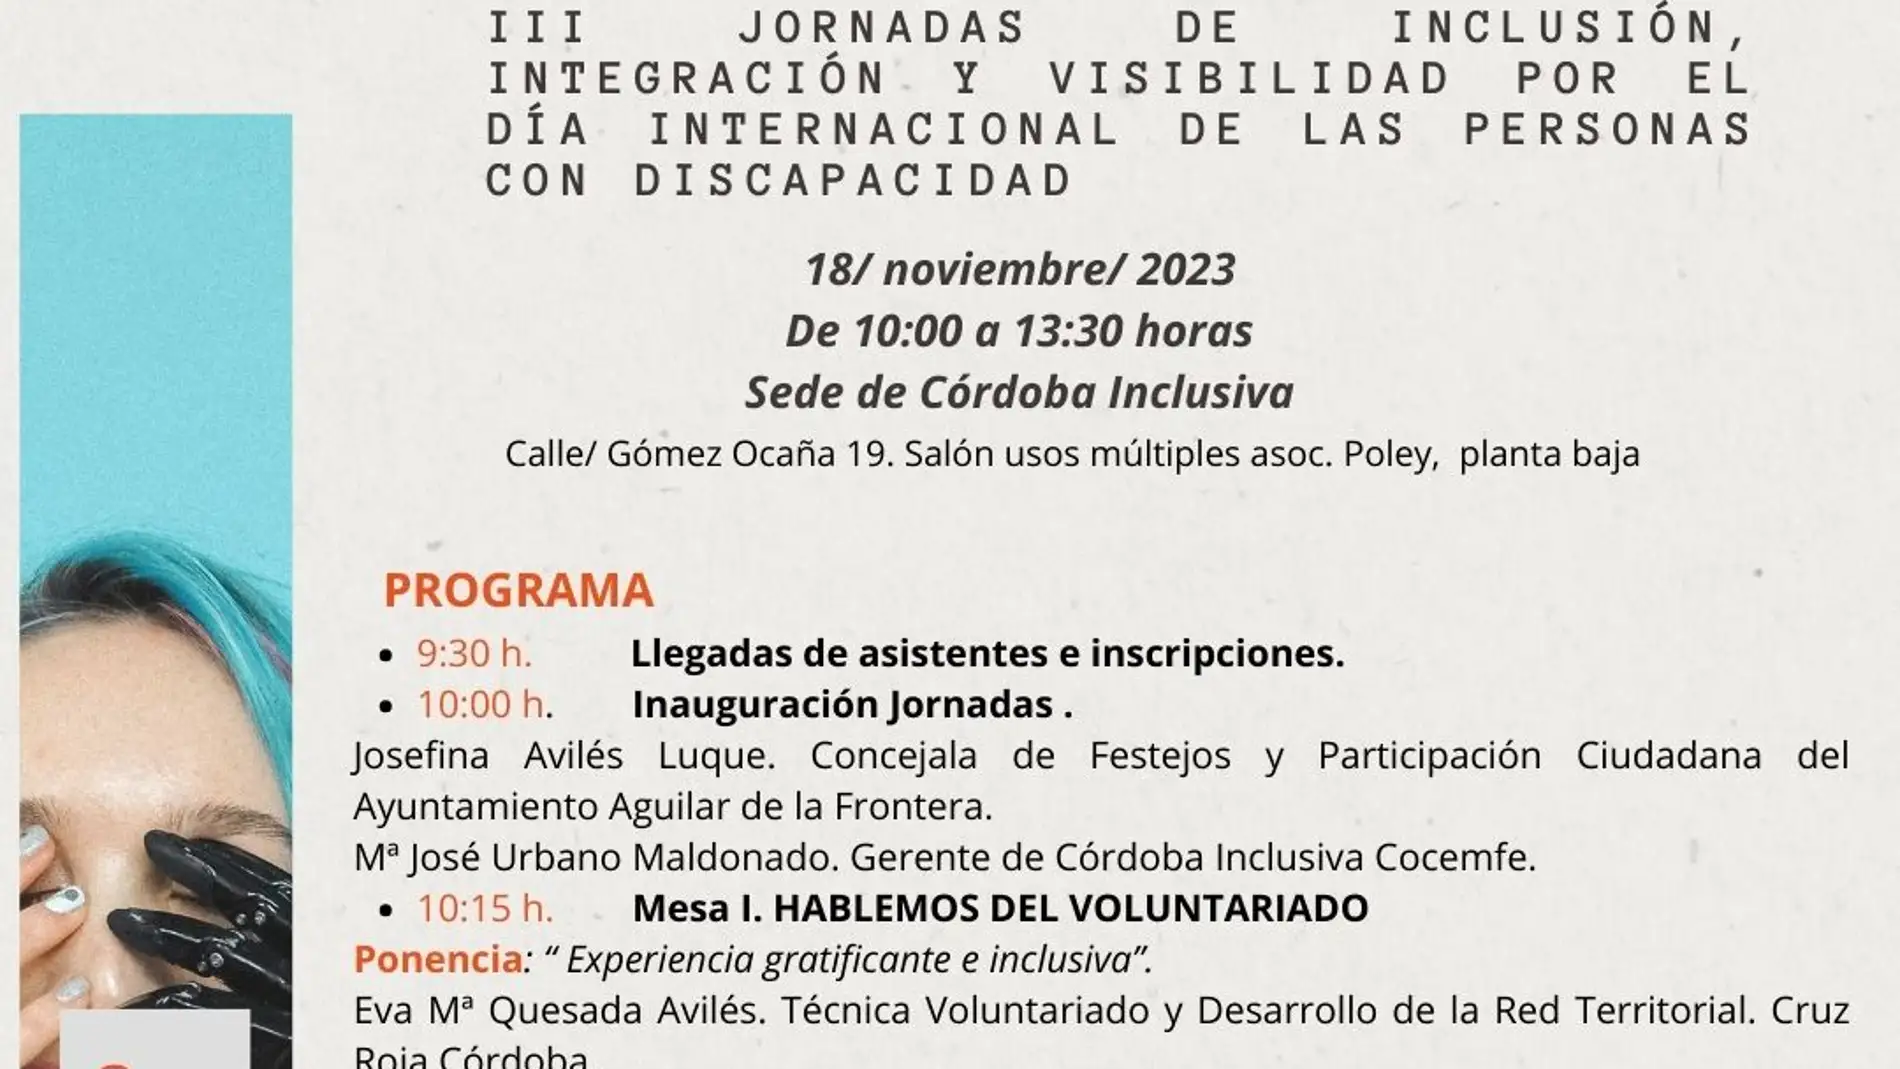 Córdoba Inclusiva COCEMFE pone en marcha su I Acto de encuentro para visibilizar y fomentar la inclusión de las personas con discapacidad